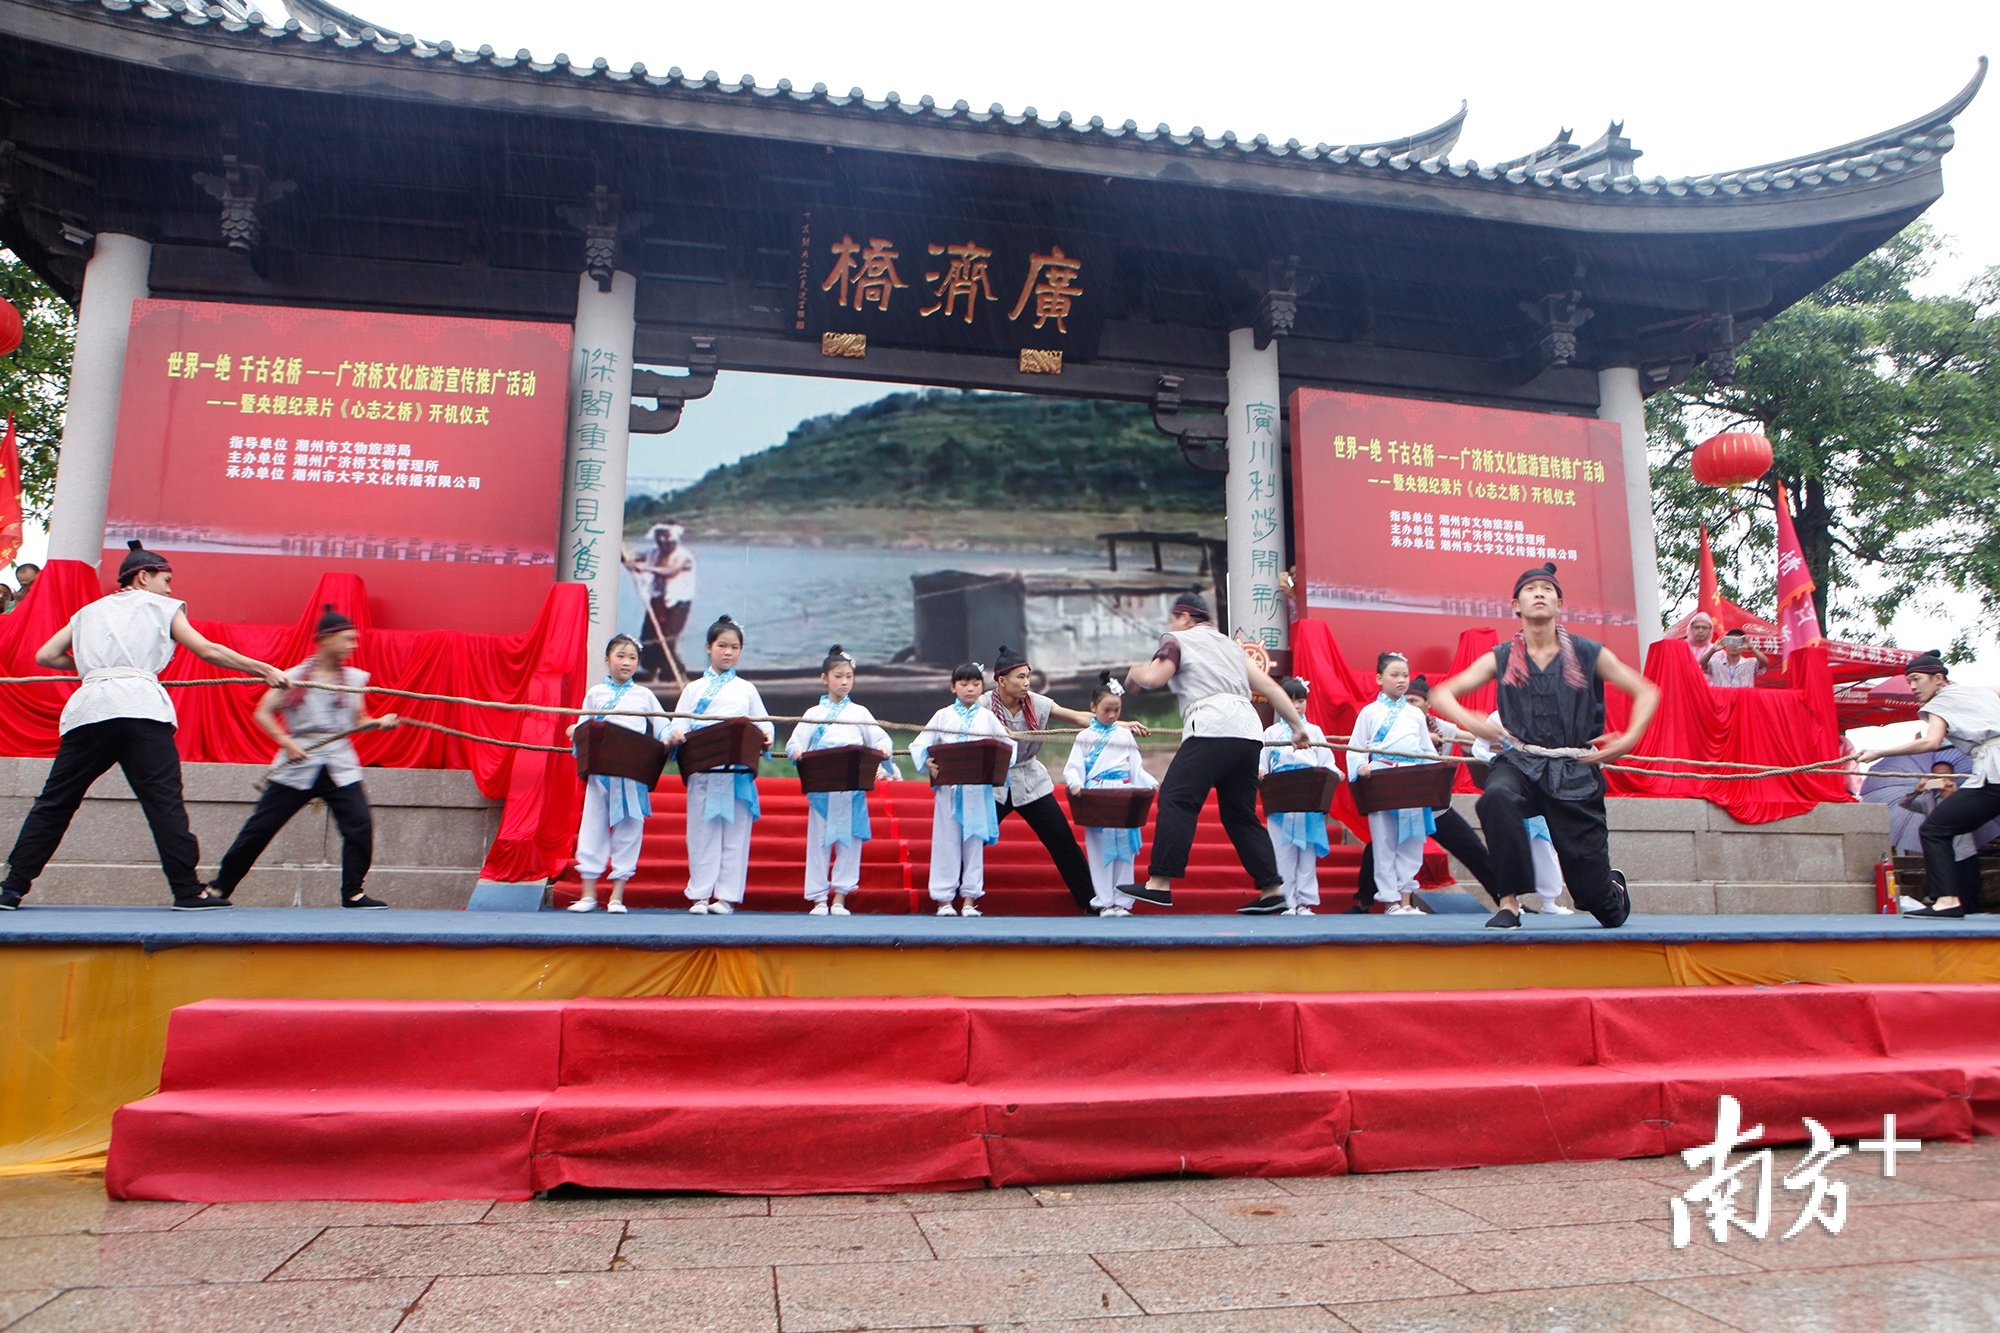 广济桥成了潮州文化展示的重要场所。